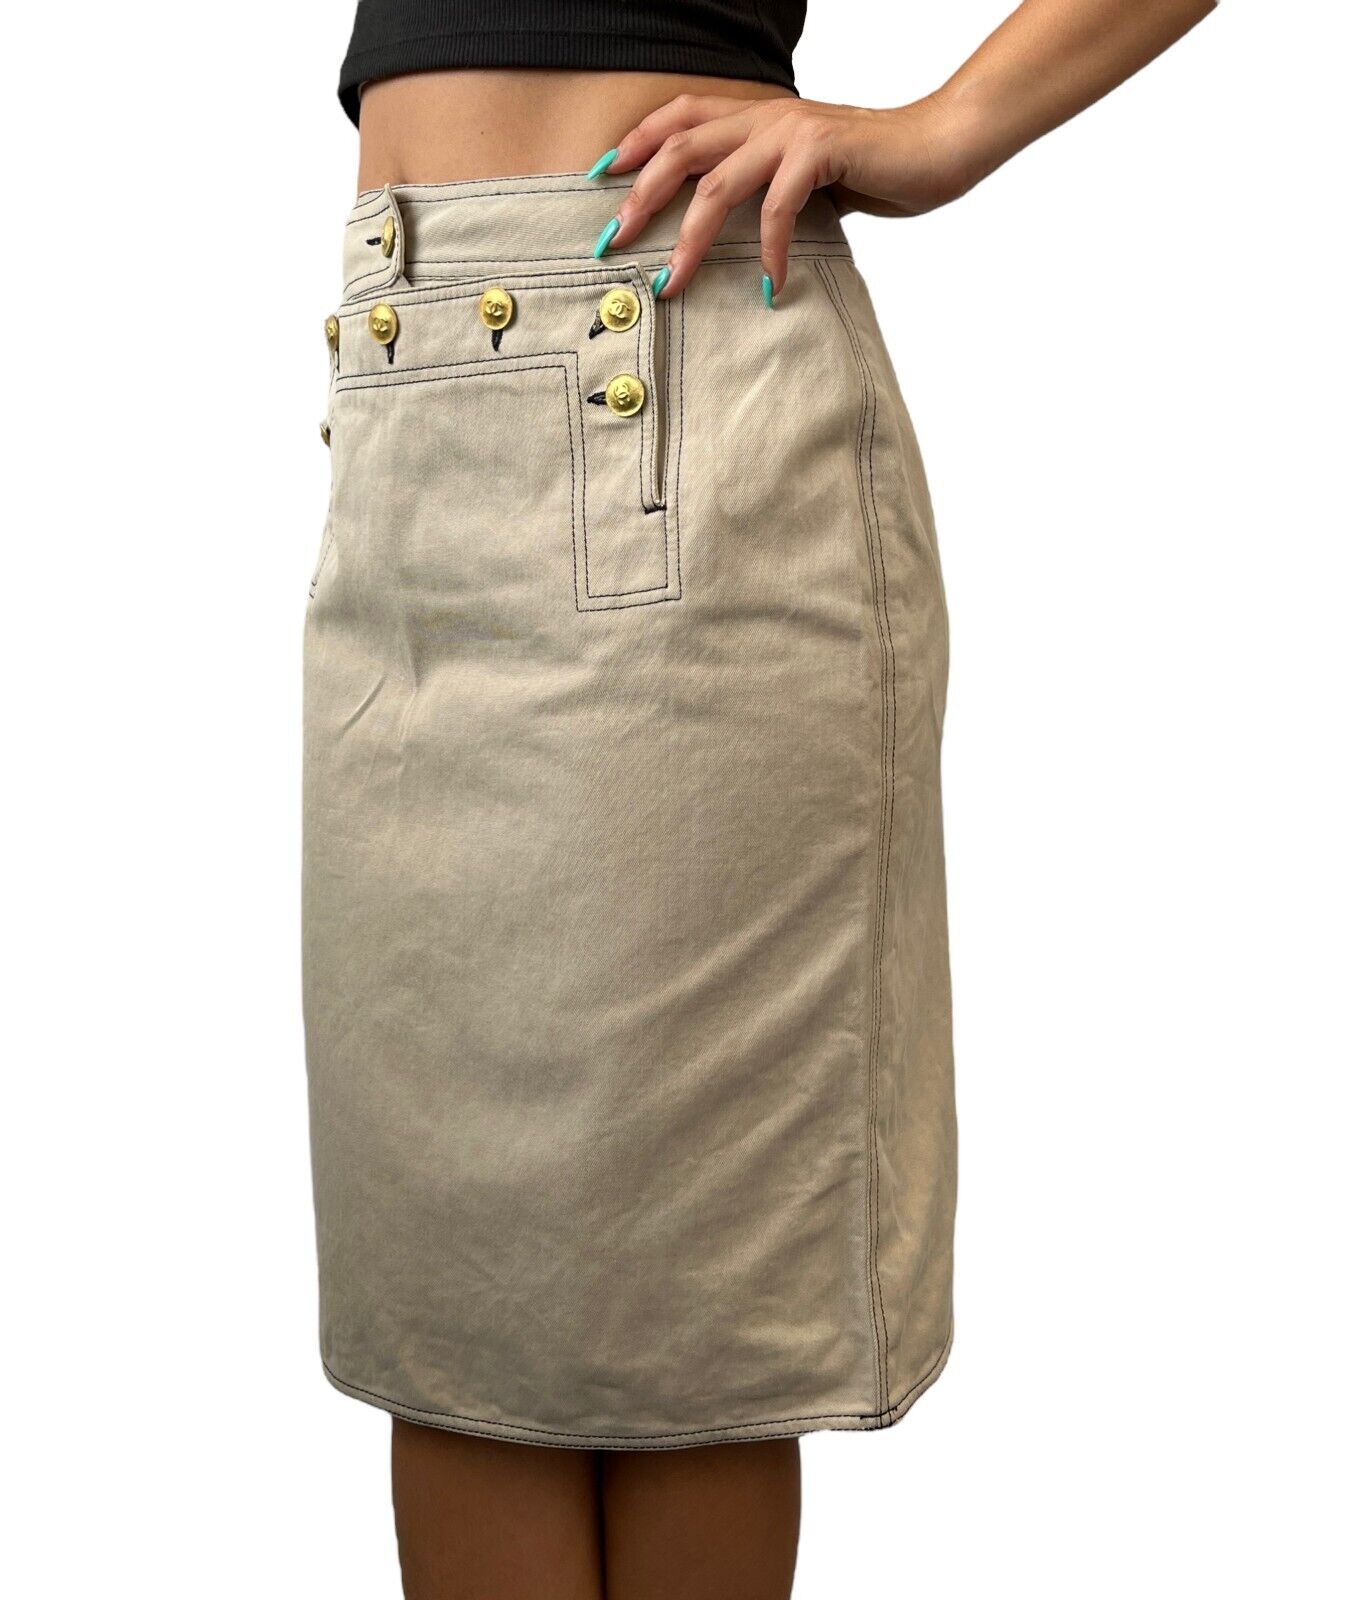 CHANEL Vintage CC Mark Gold Button Skirt #40 Stitch Beige Cotton Rank AB